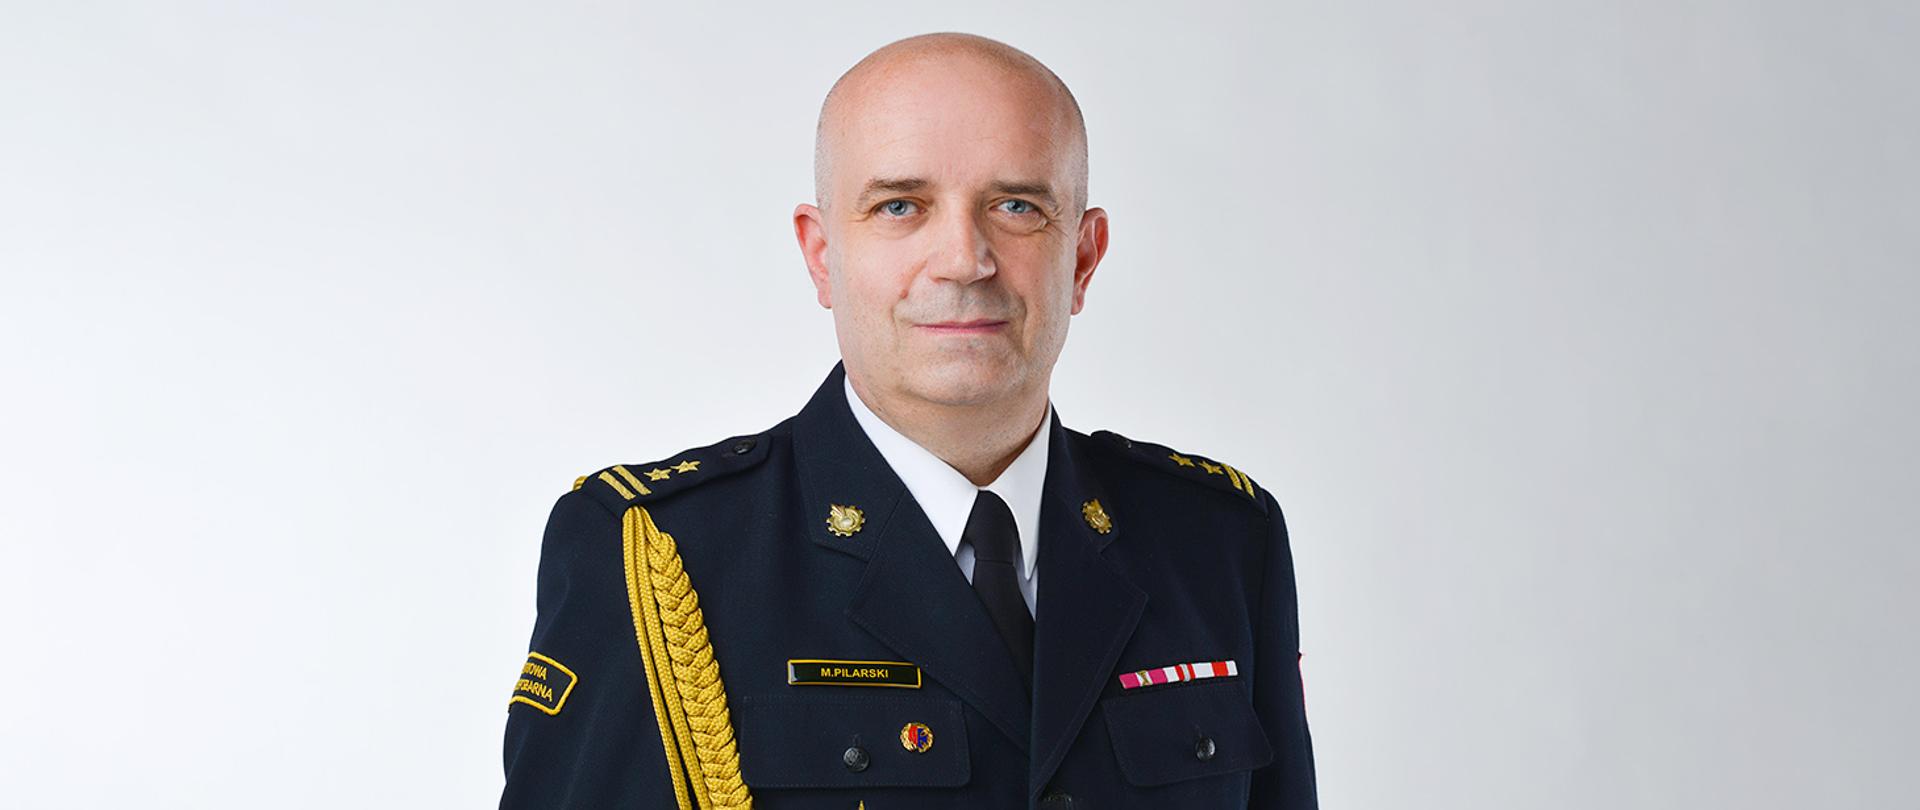 Zdjęcie przedstawia komendanta bryg. mgr inż. Marcina Pilarskiego na jasnym tle w mundurze galowym